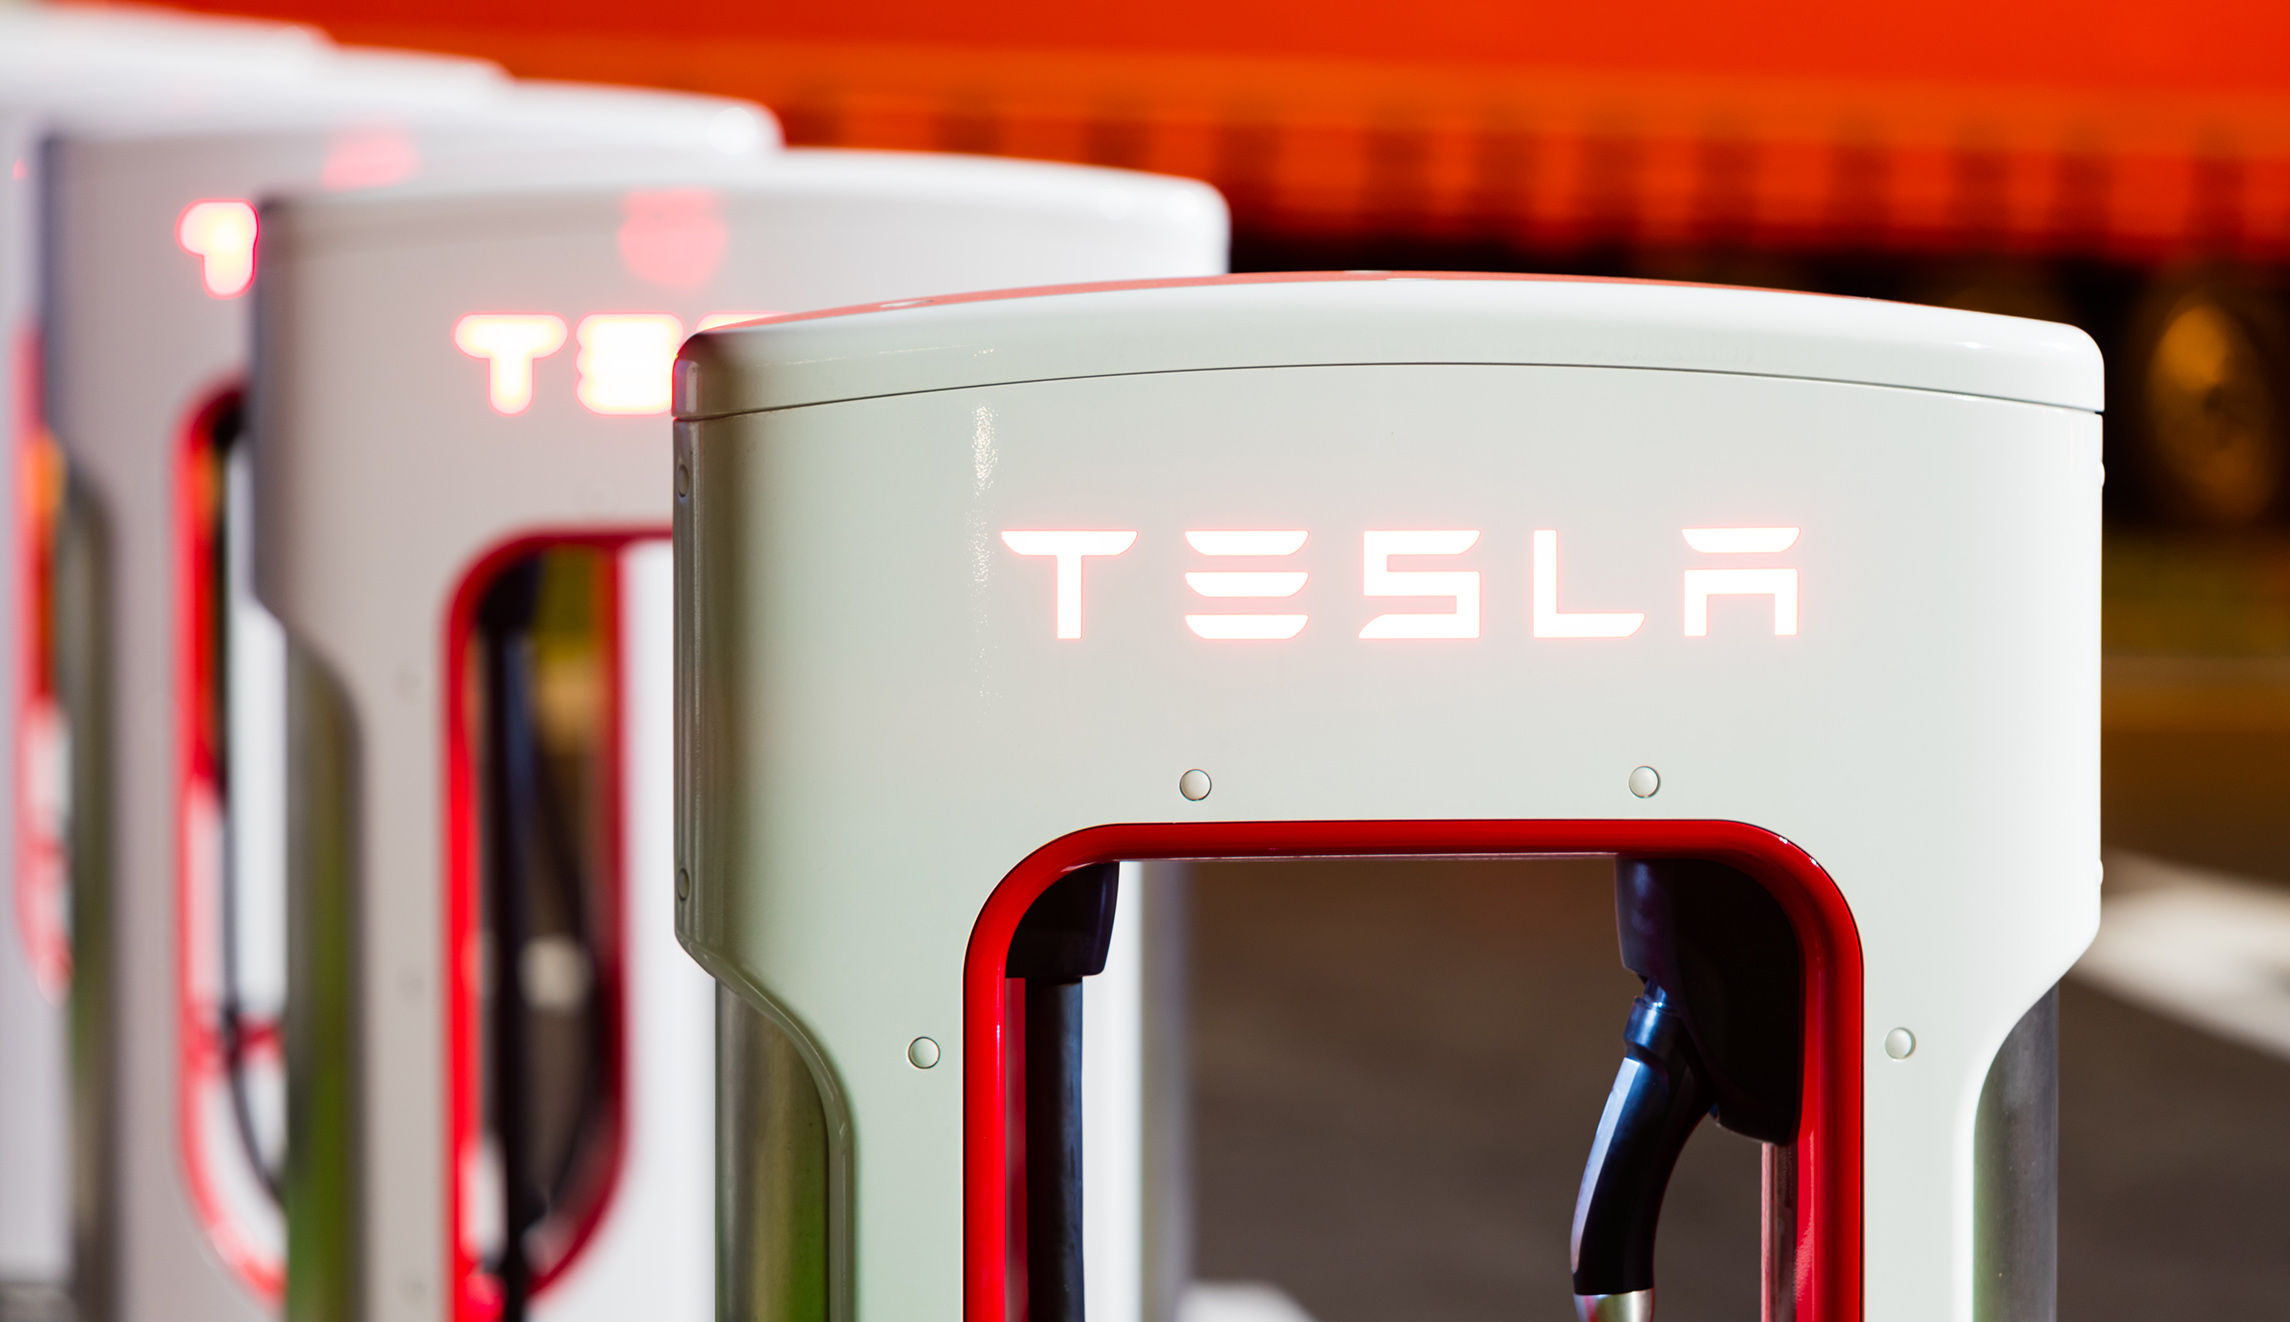 Nouvelles portant l'étiquette Tesla, Elektor